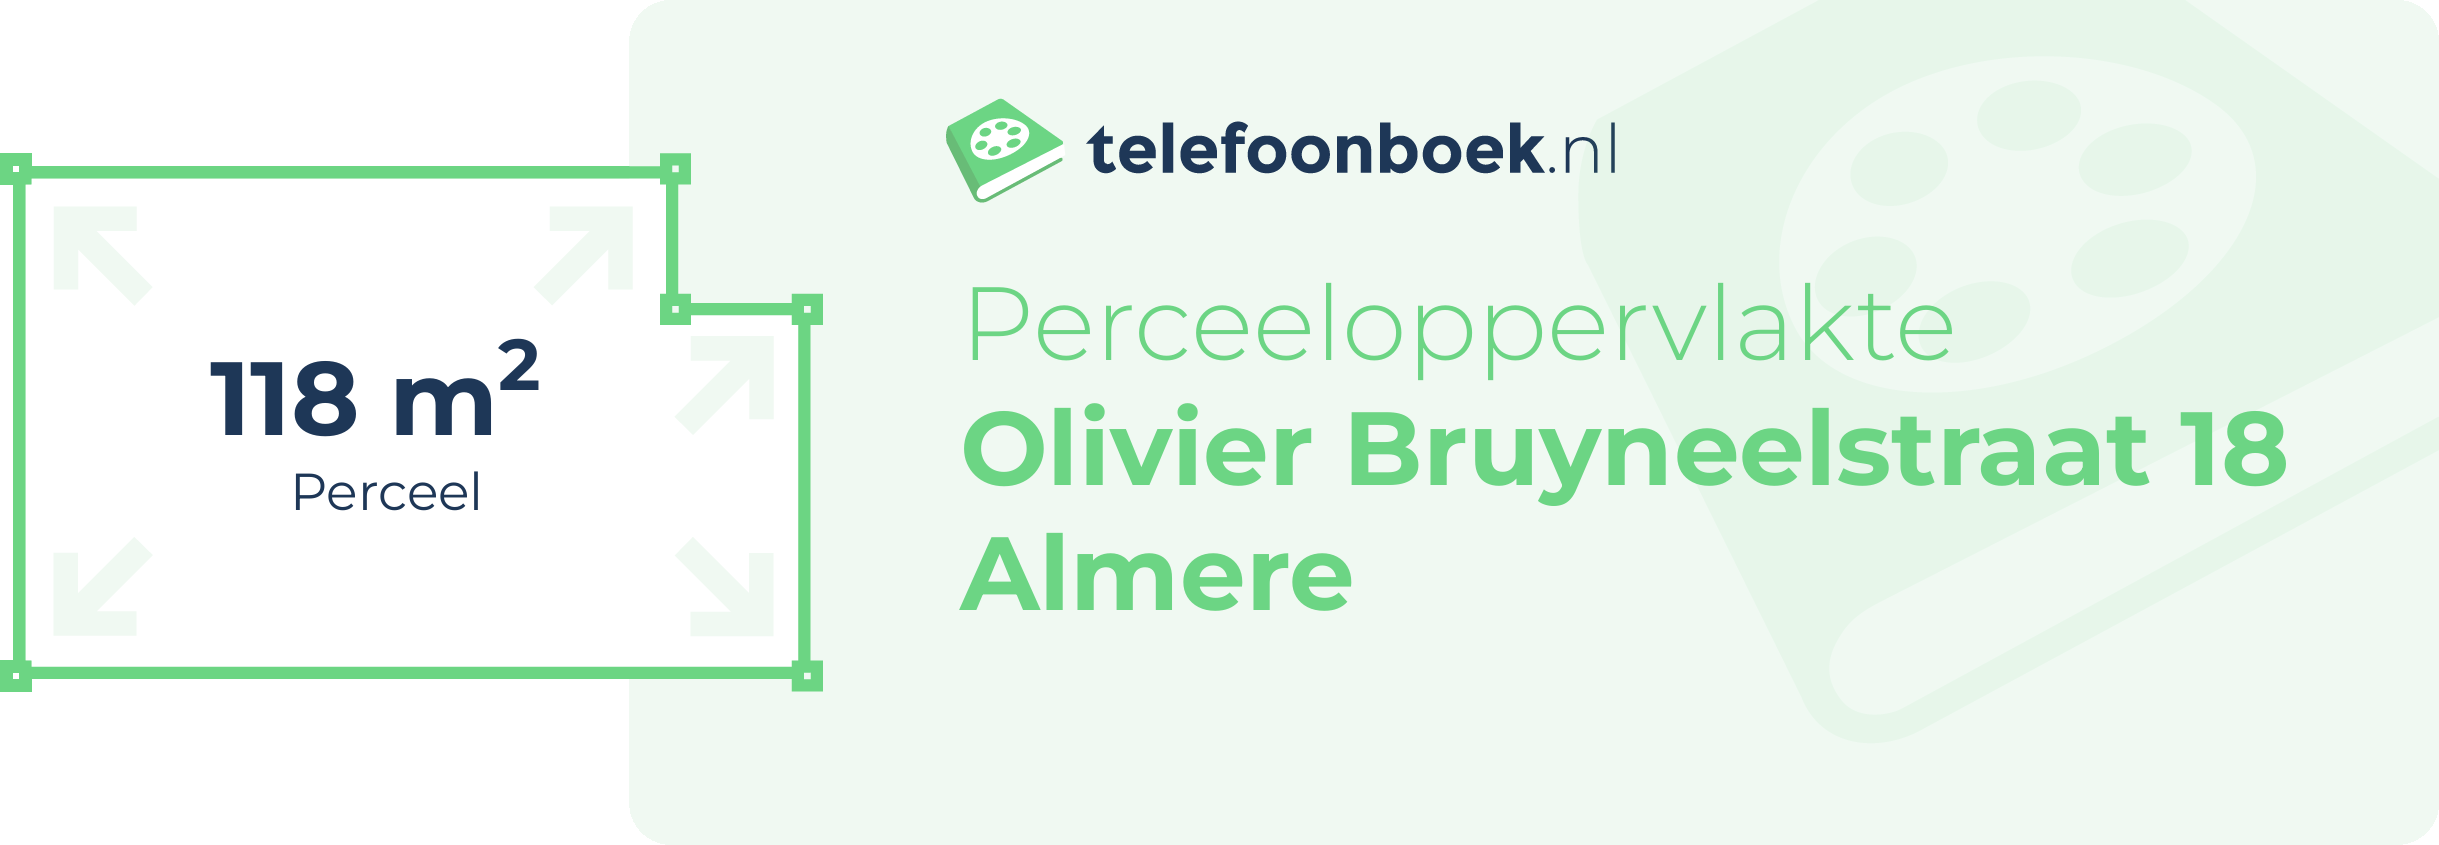 Perceeloppervlakte Olivier Bruyneelstraat 18 Almere